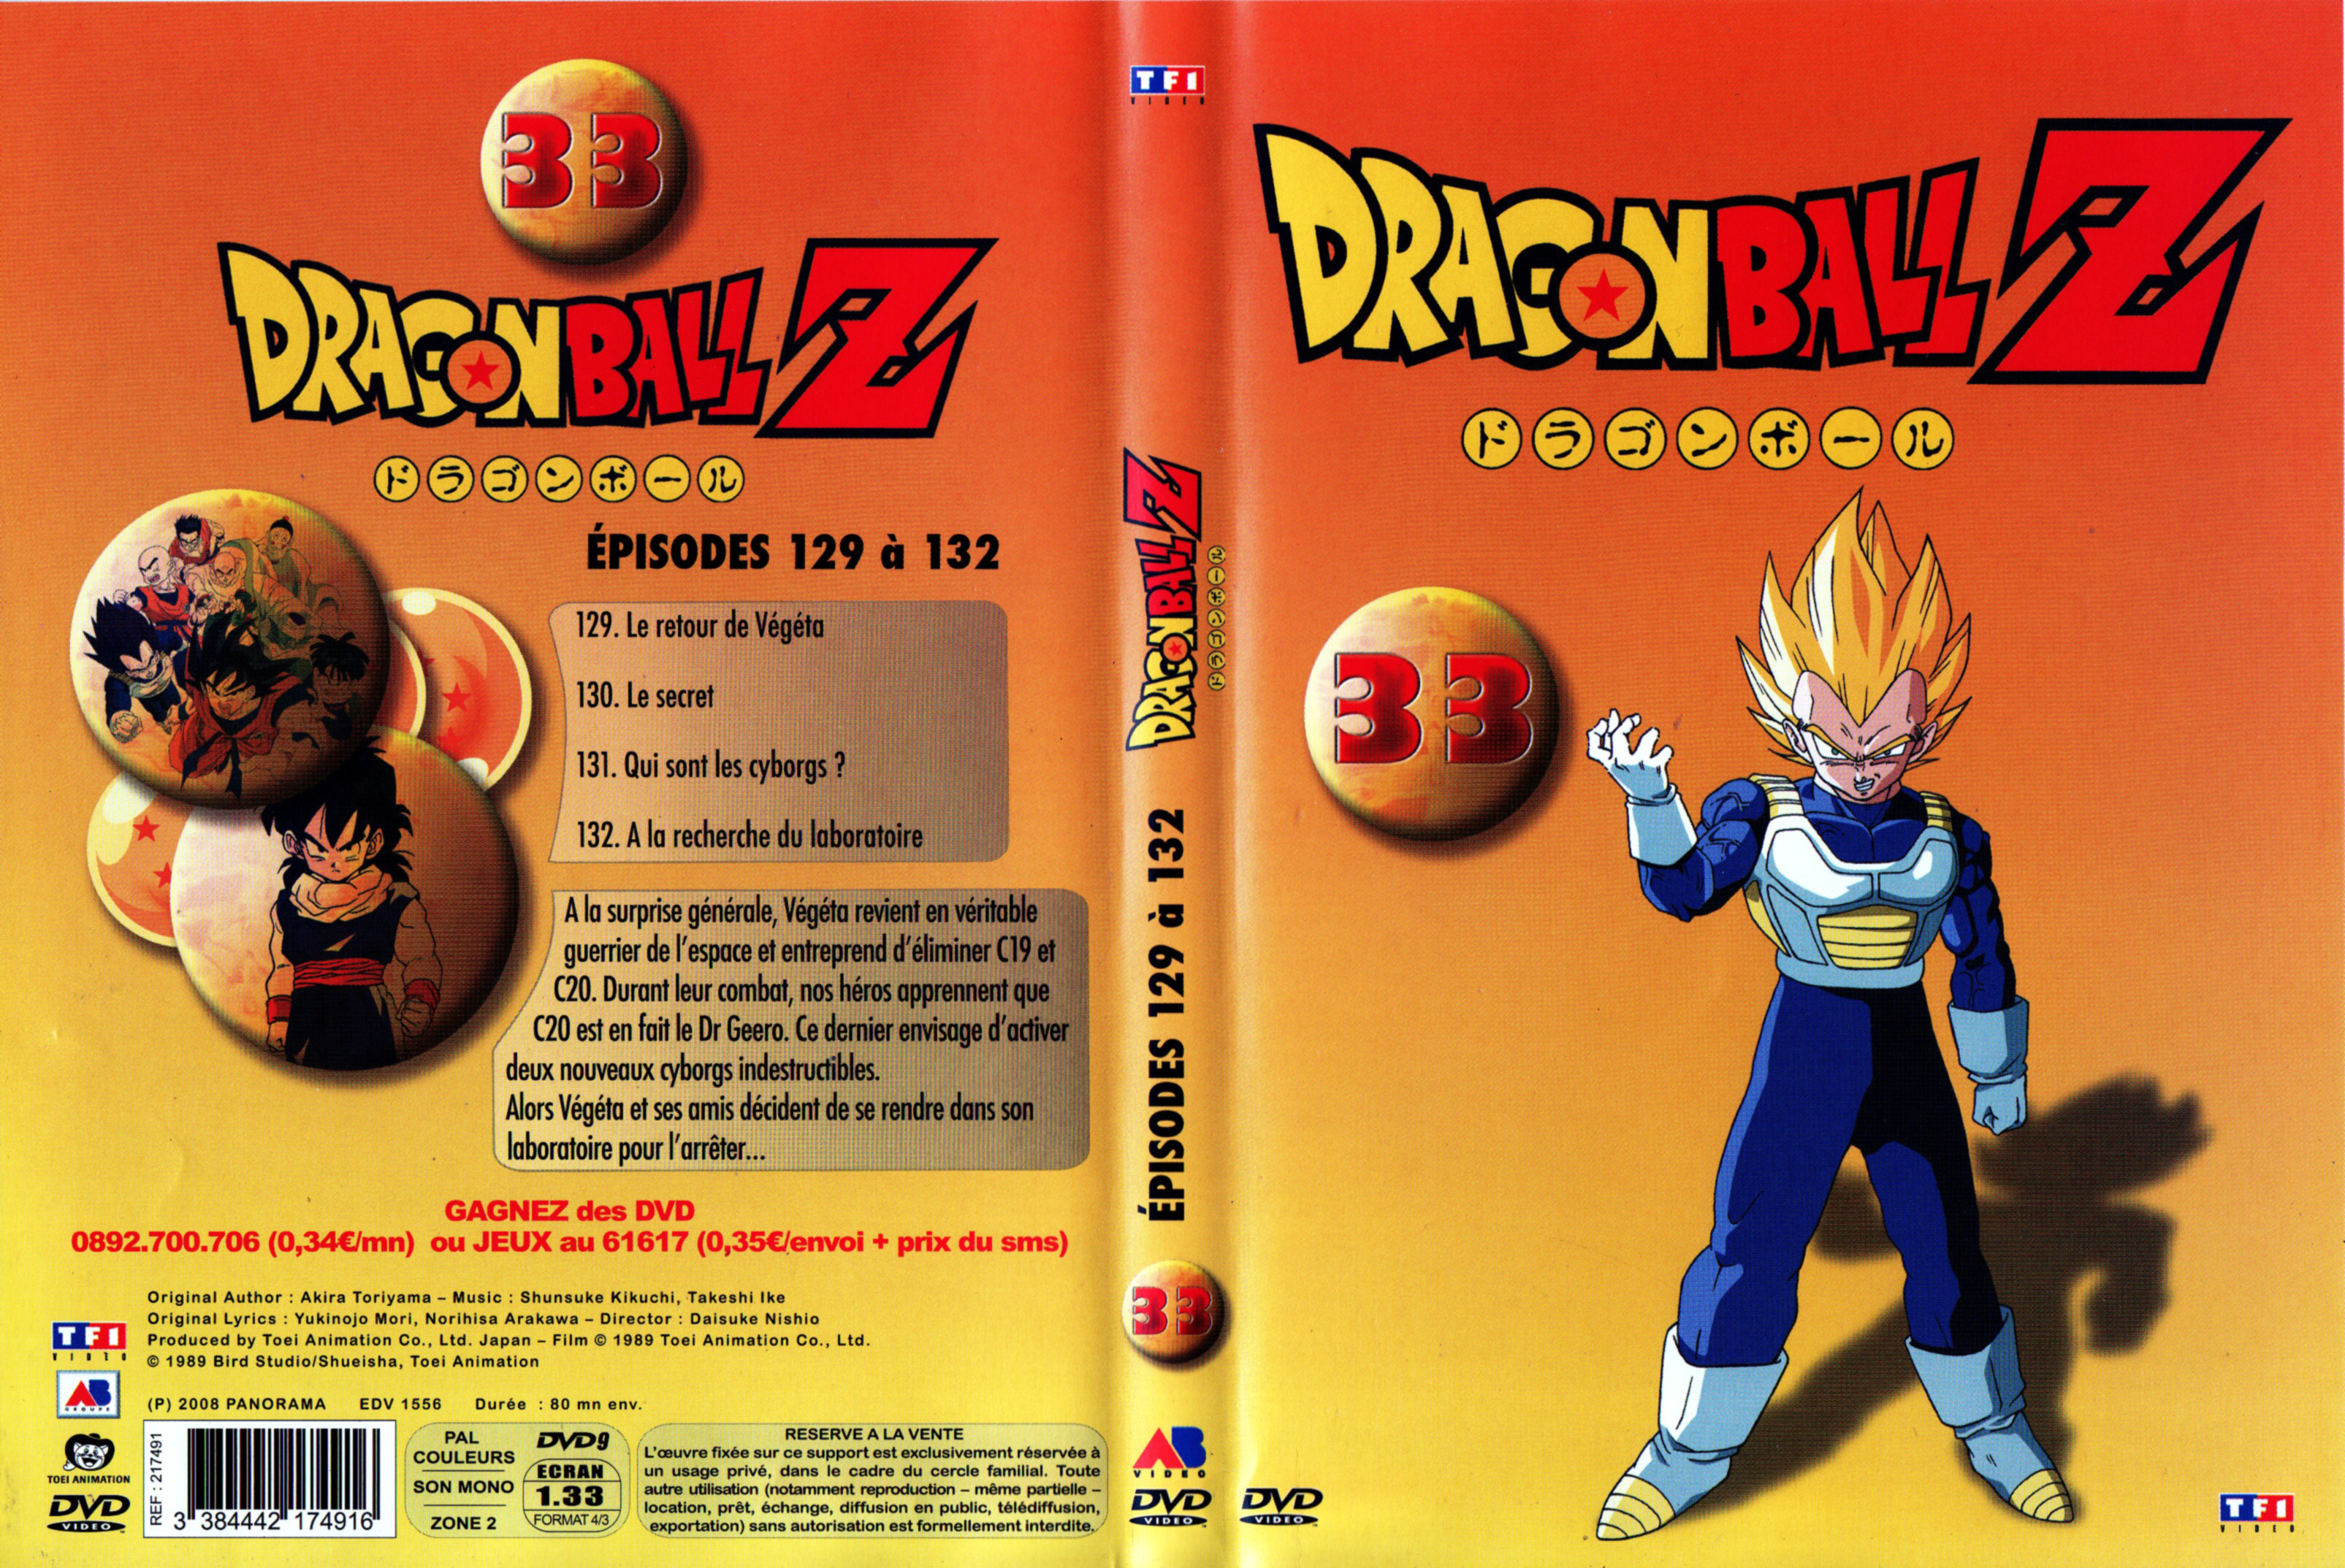 Jaquette DVD Dragon Ball Z vol 33 v3